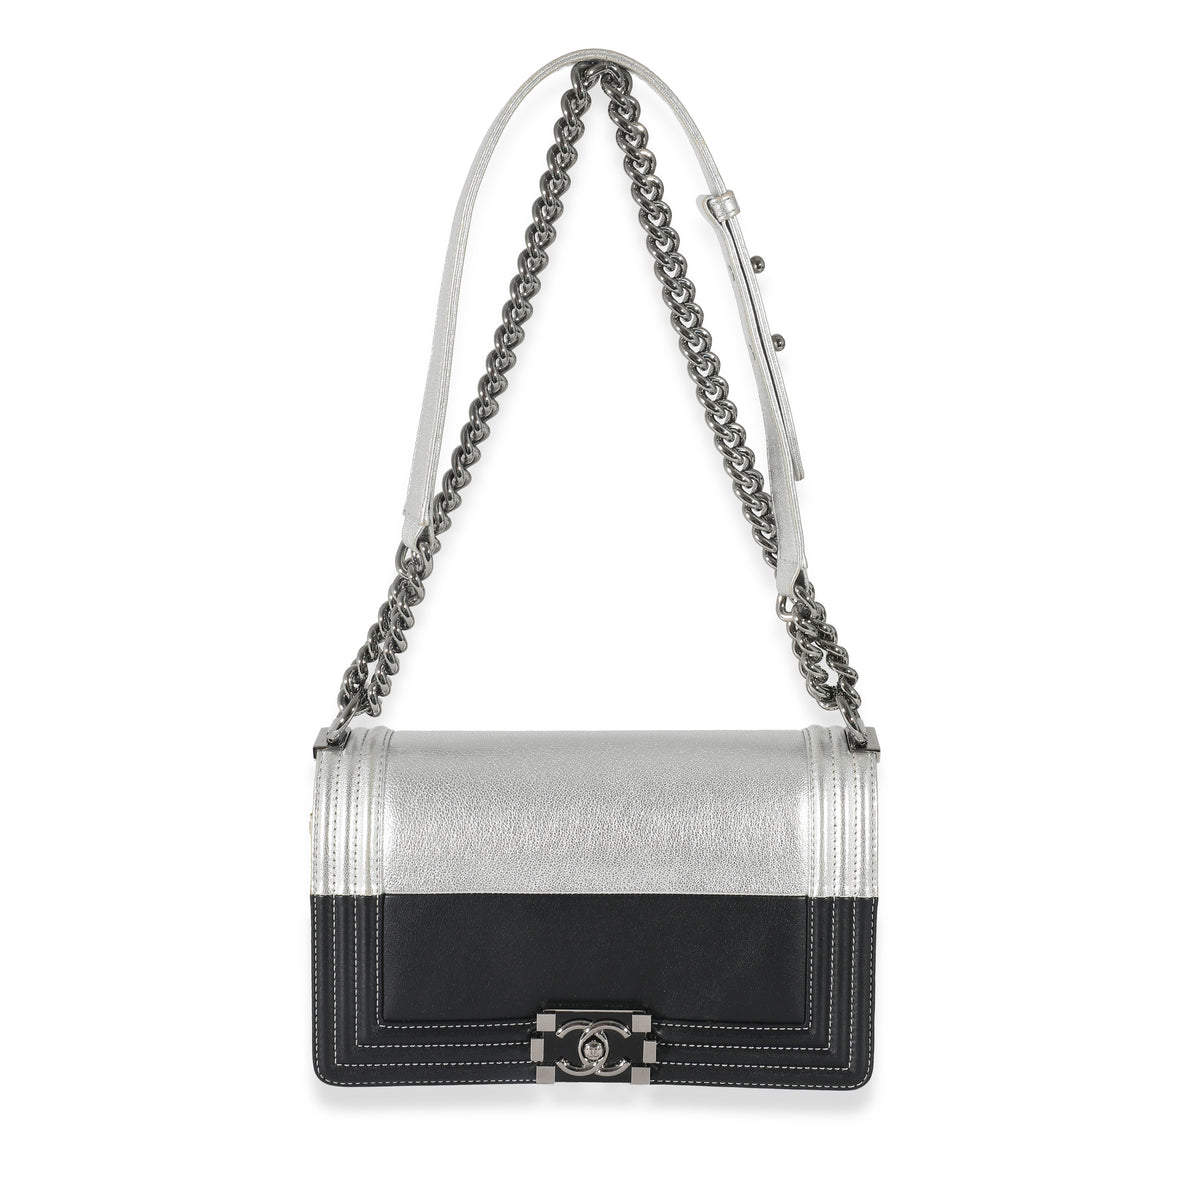 Chanel Black & Metallic Silver Leather Medium Boy Bag